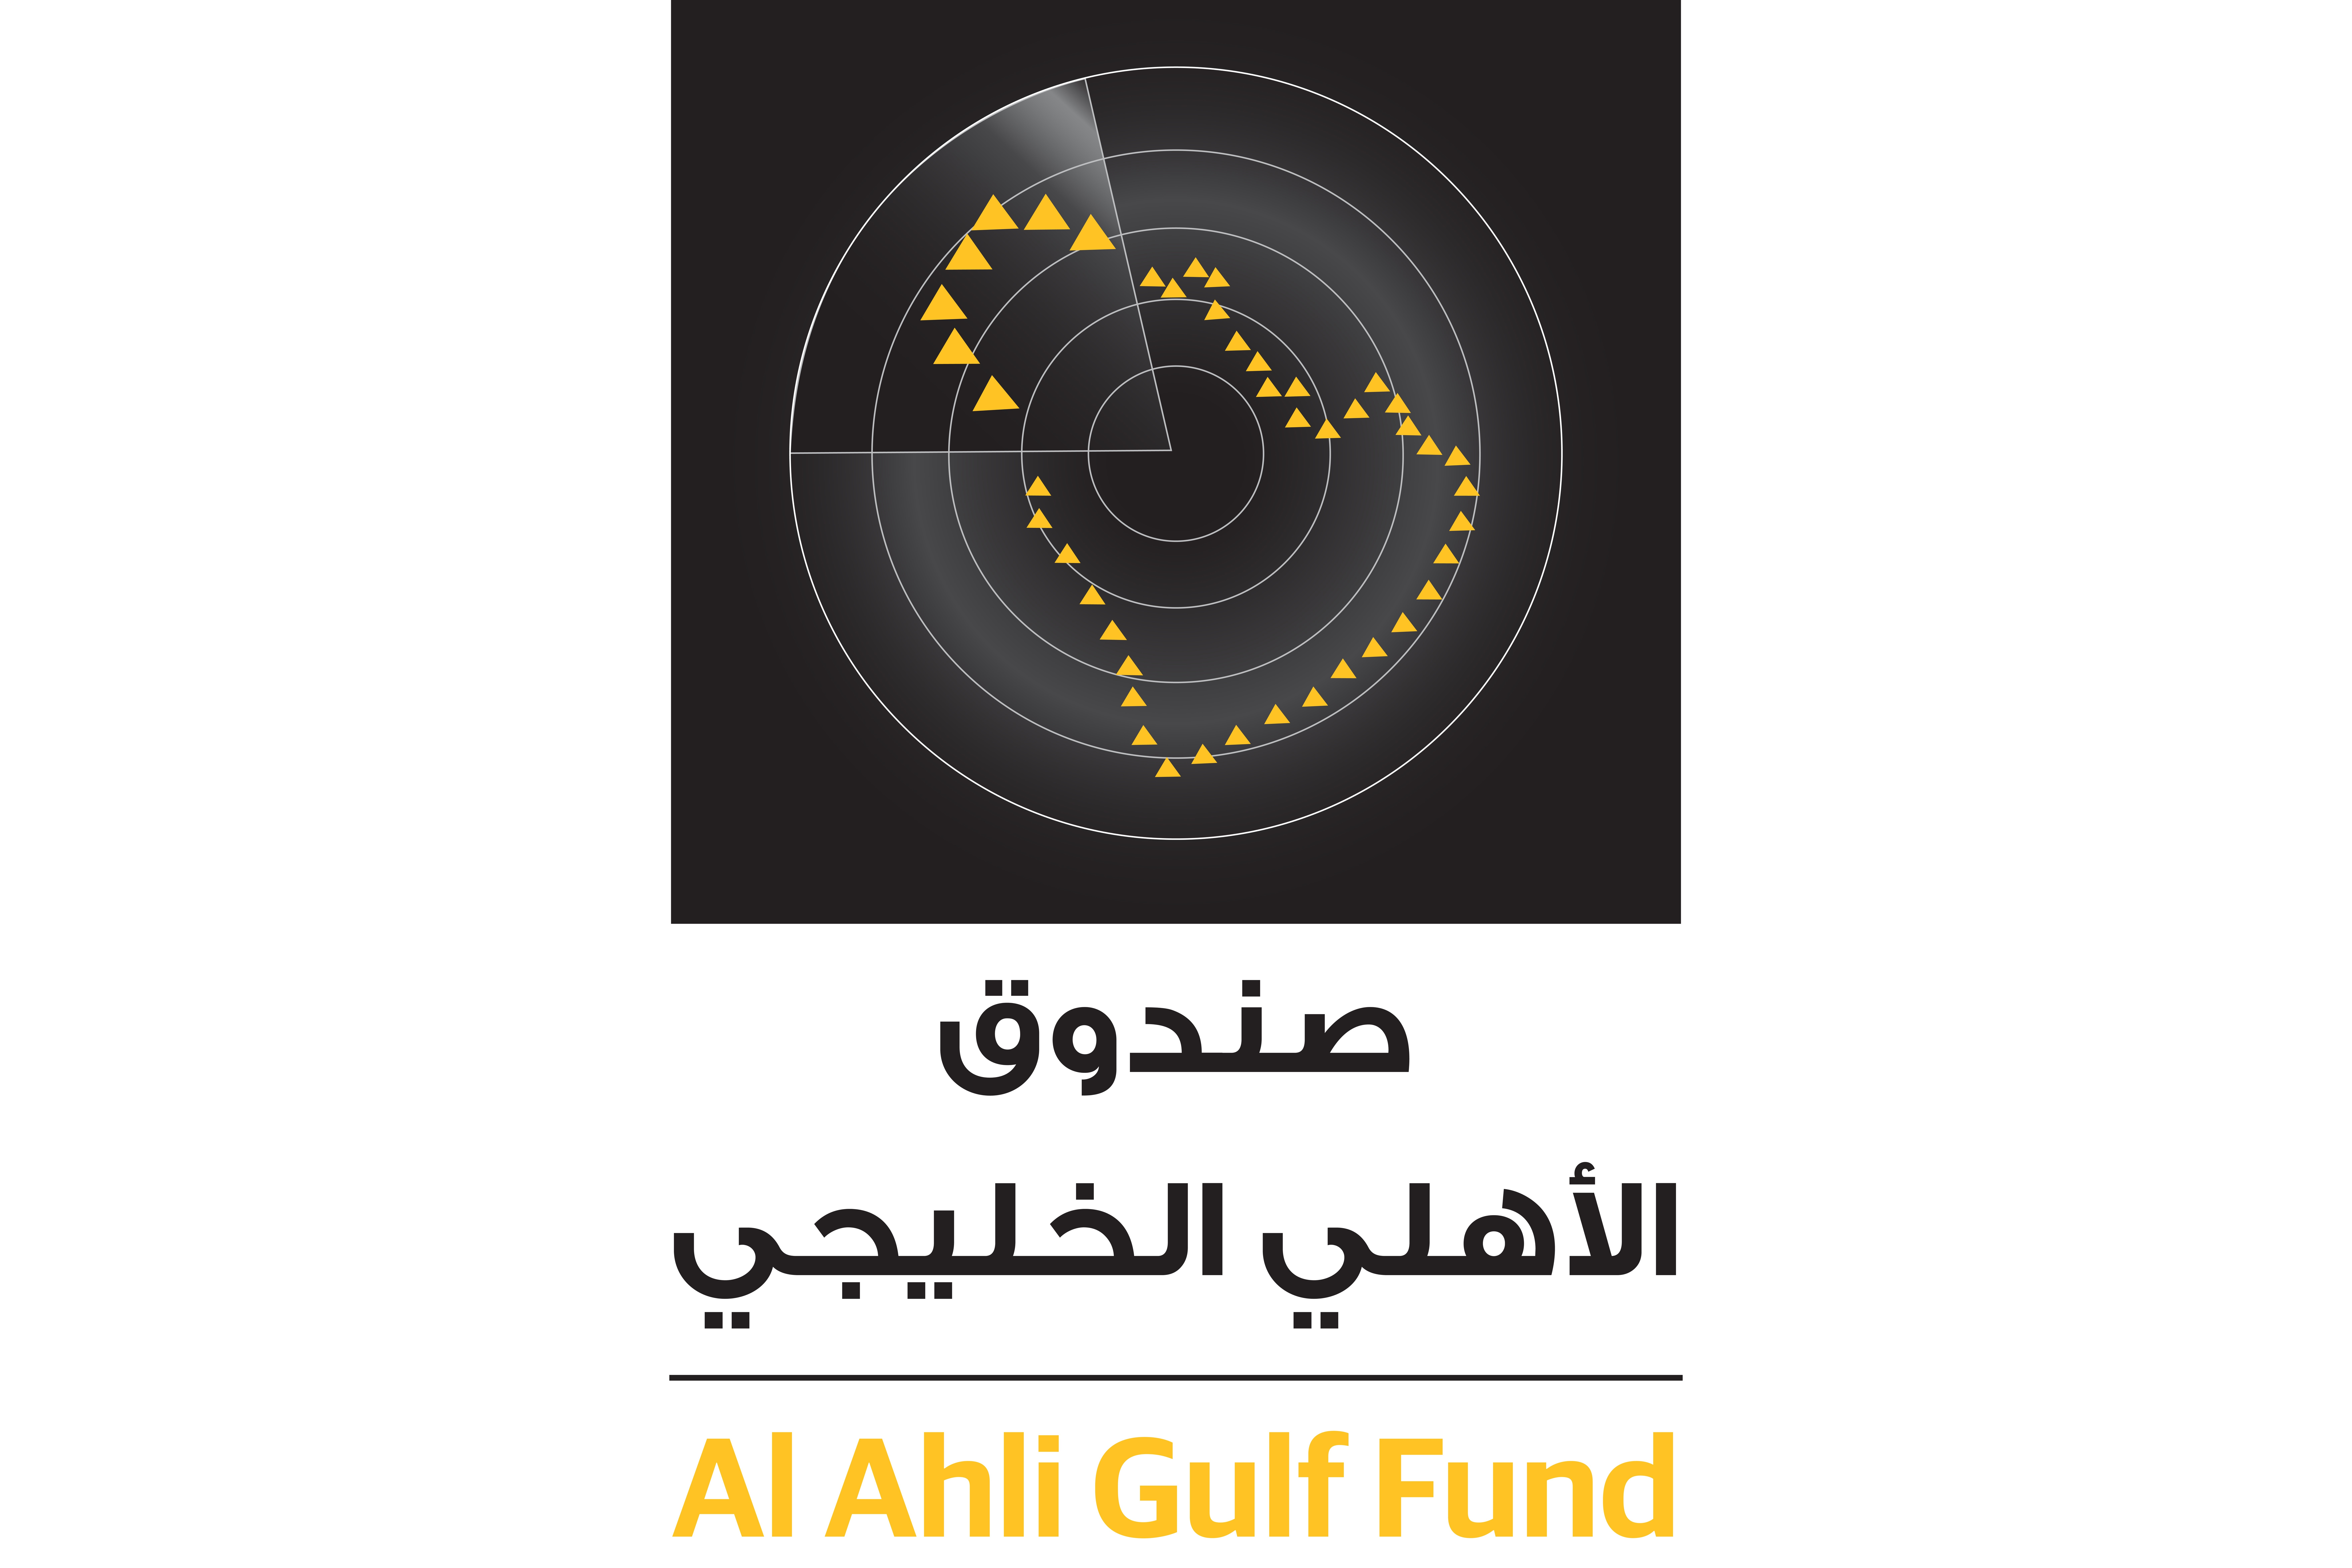 Notification to Al Ahli Gulf Fund unit holders 